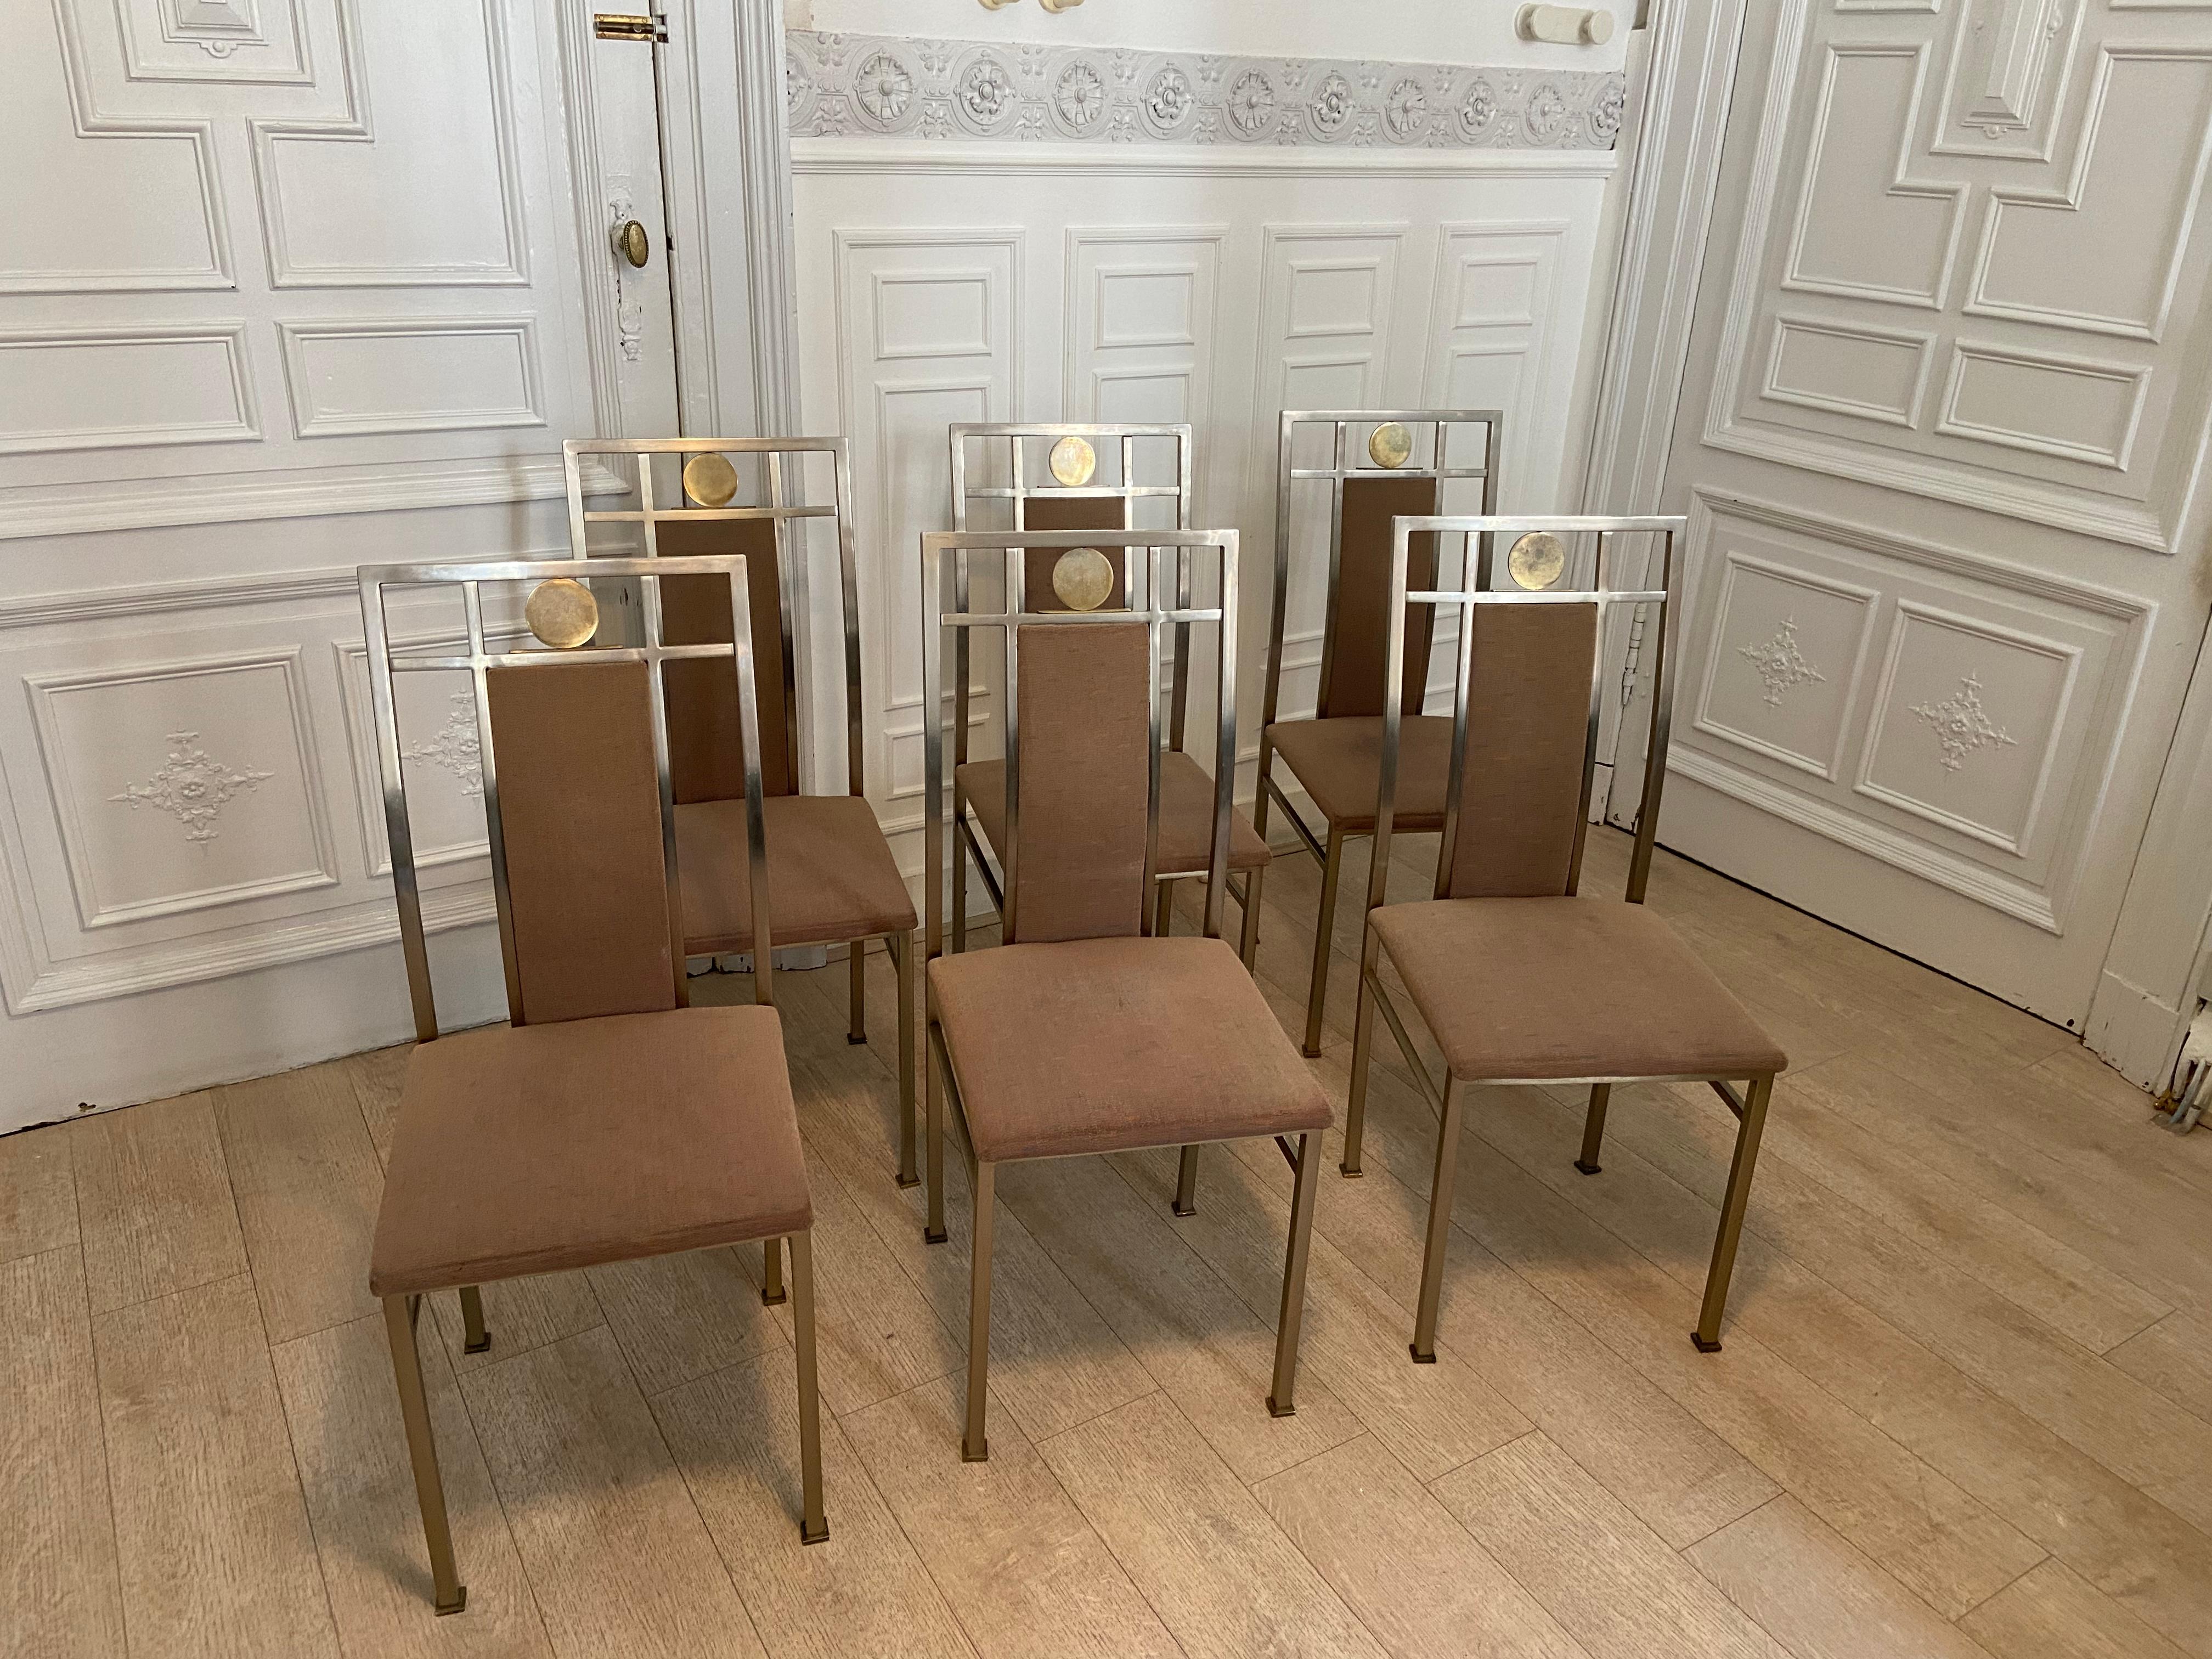 Ensemble de six chaises produites par le fabricant belge belgo chrom dans les années 80. Structure en métal argenté et médaillon doré. Bon état général, signes d'usure cohérents avec l'âge. Hauteur du siège : 46.